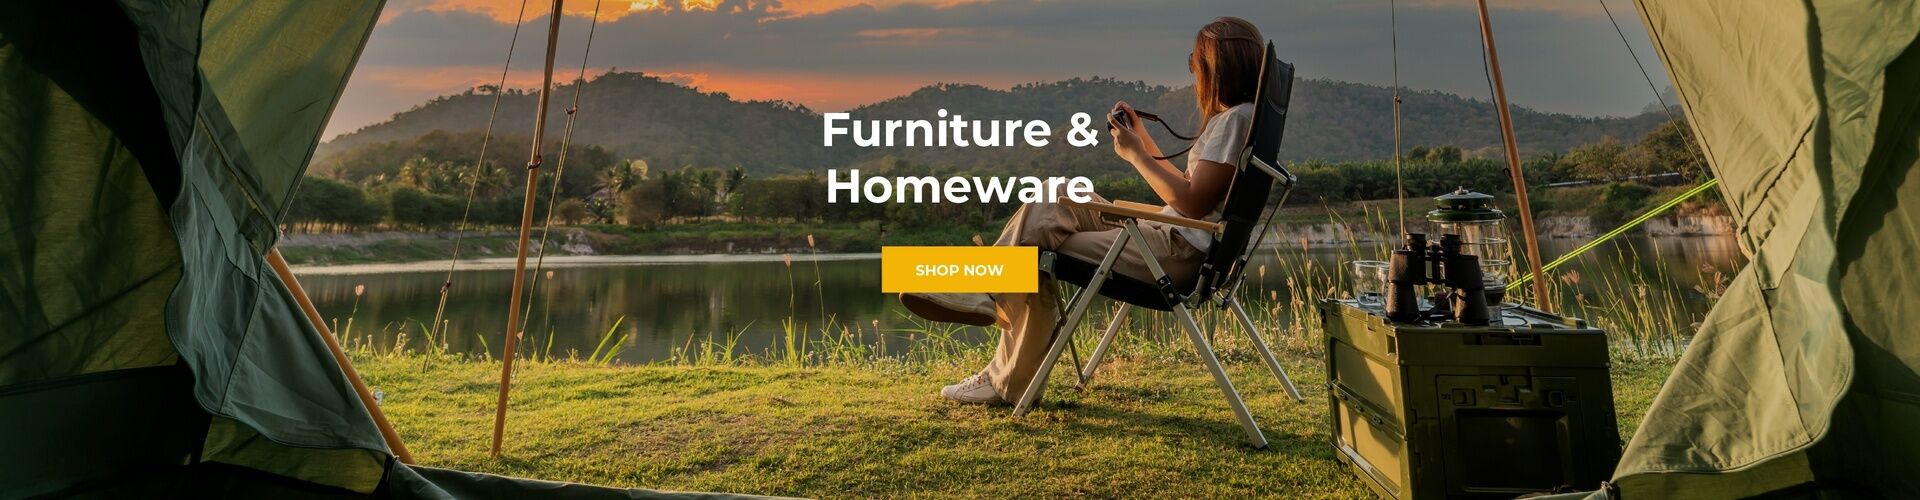 Furniture & Homeware